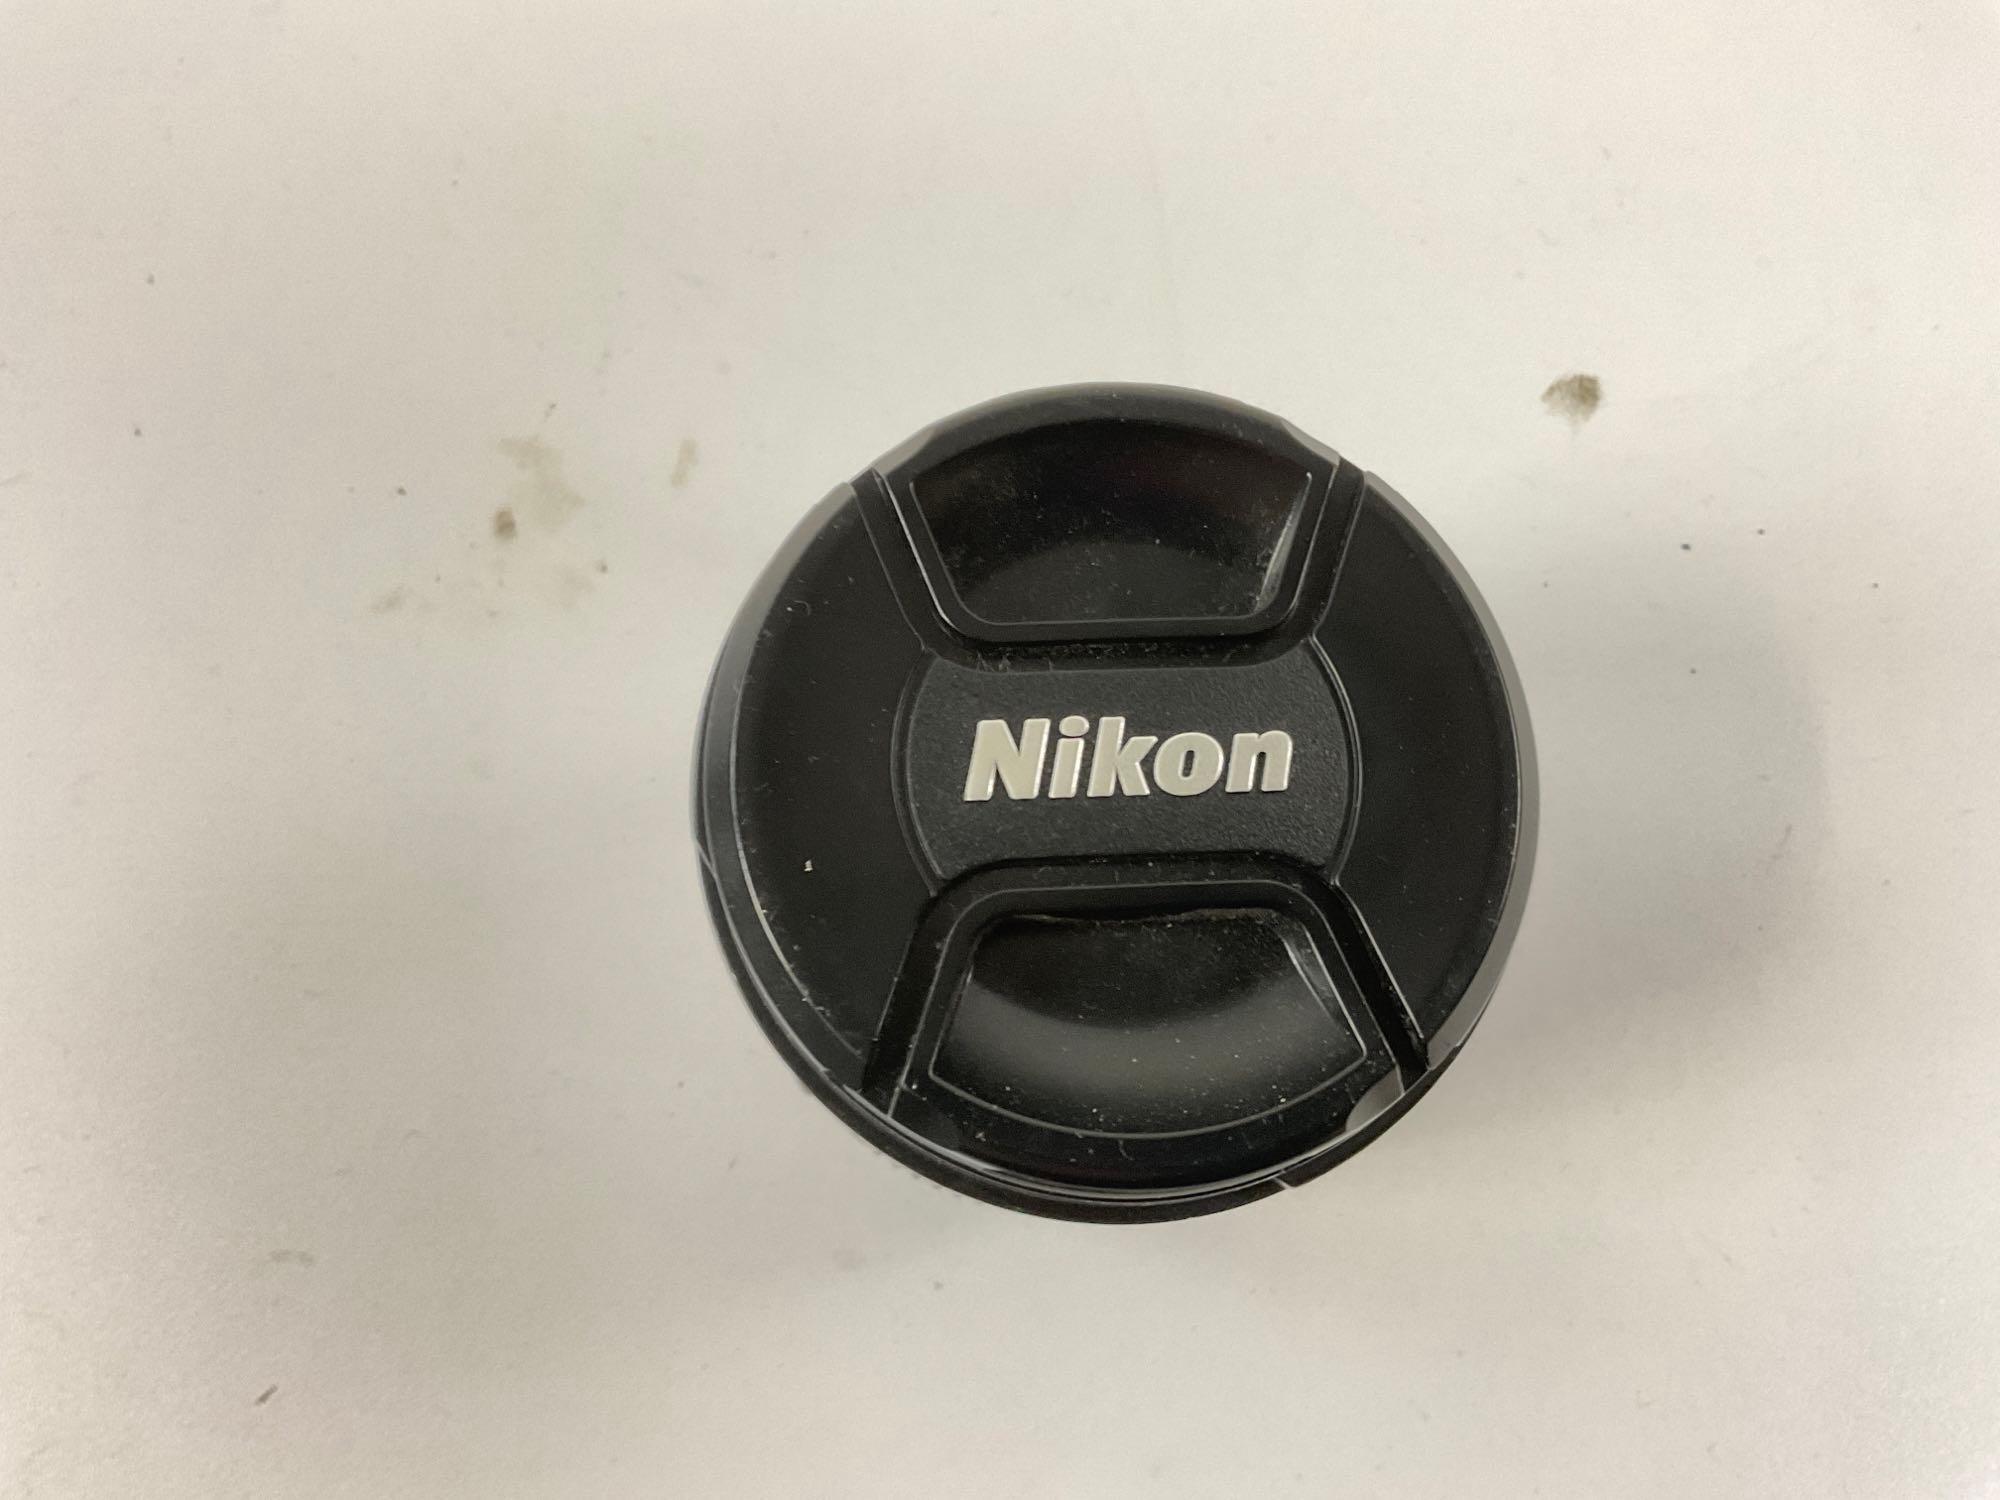 Nikon D80 DSLR camera and Minolta flash